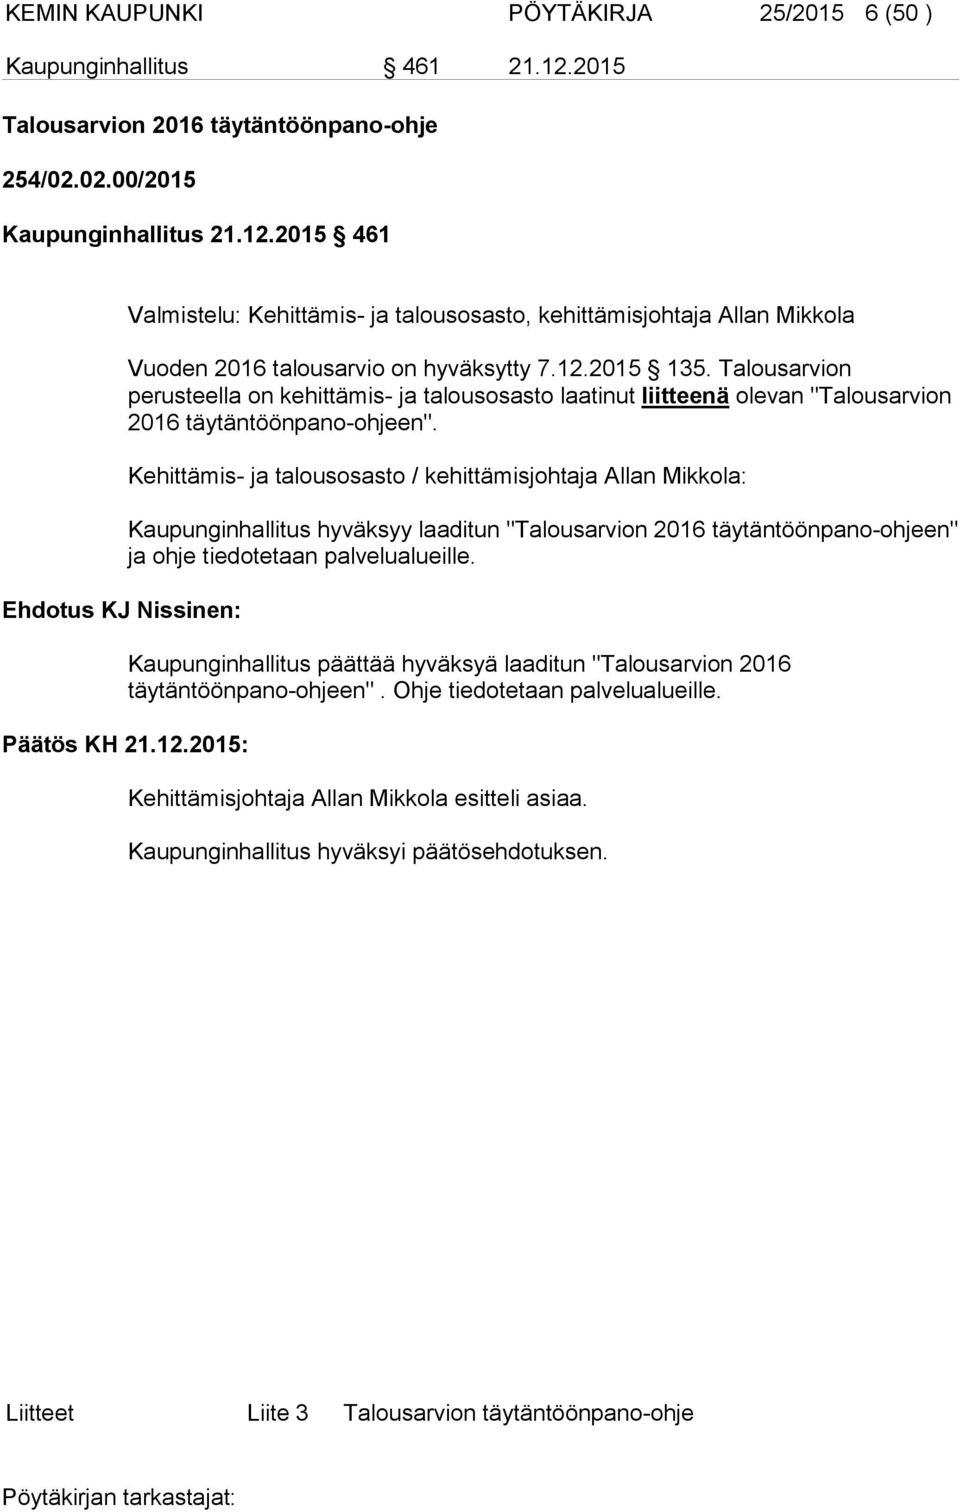 Kehittämis- ja talousosasto / kehittämisjohtaja Allan Mikkola: Kaupunginhallitus hyväksyy laaditun "Talousarvion 2016 täytäntöönpano-ohjeen" ja ohje tiedotetaan palvelualueille.